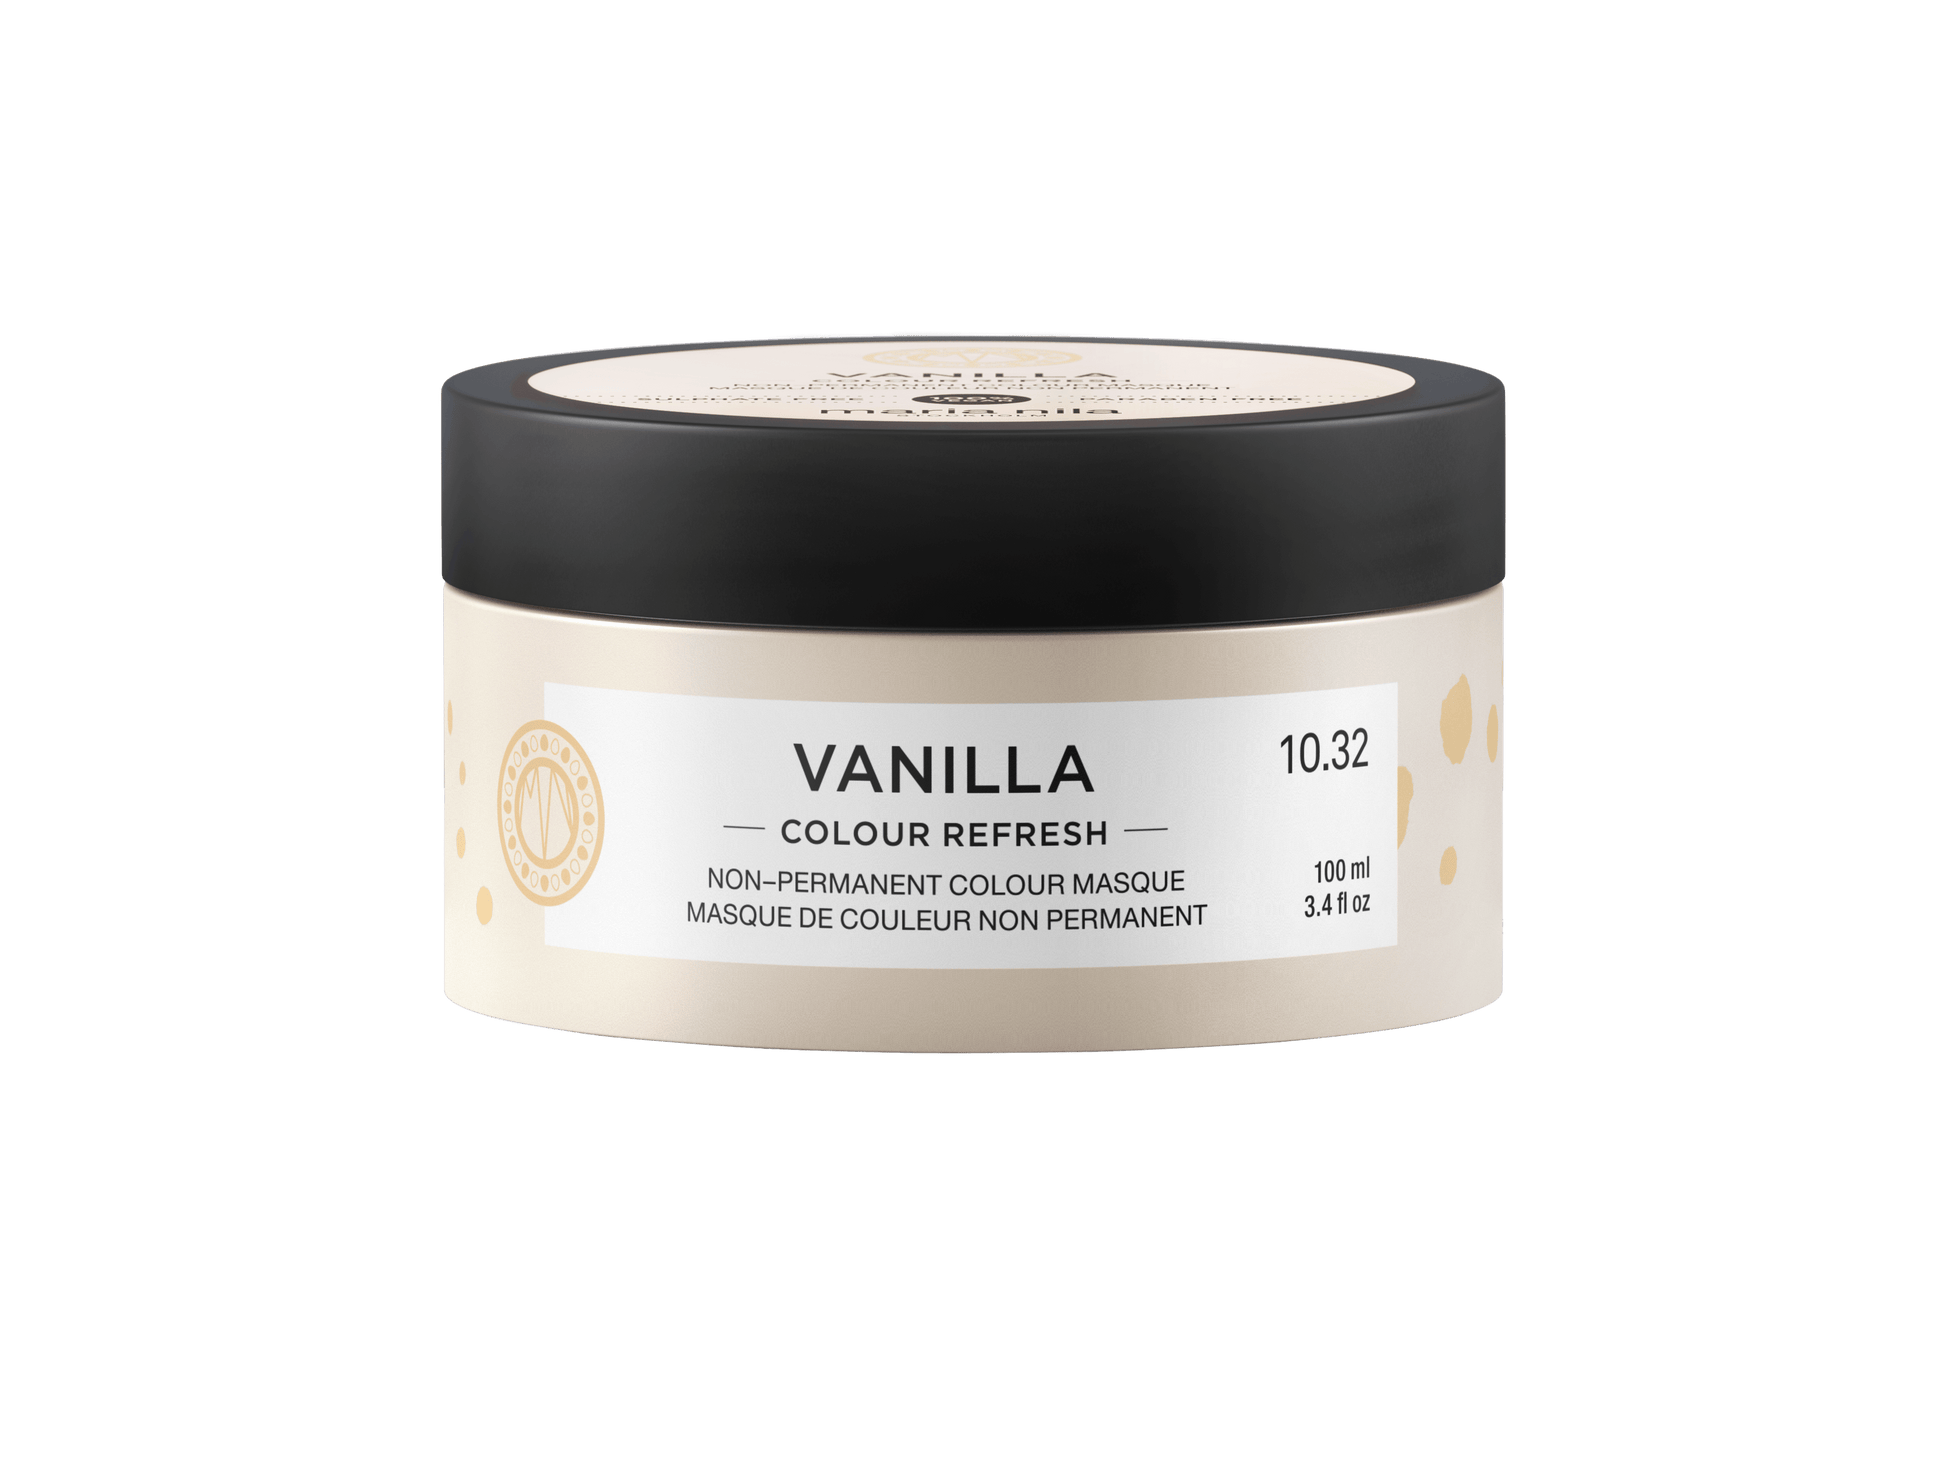 Colour Refresh Vanilla - The Coloroom 